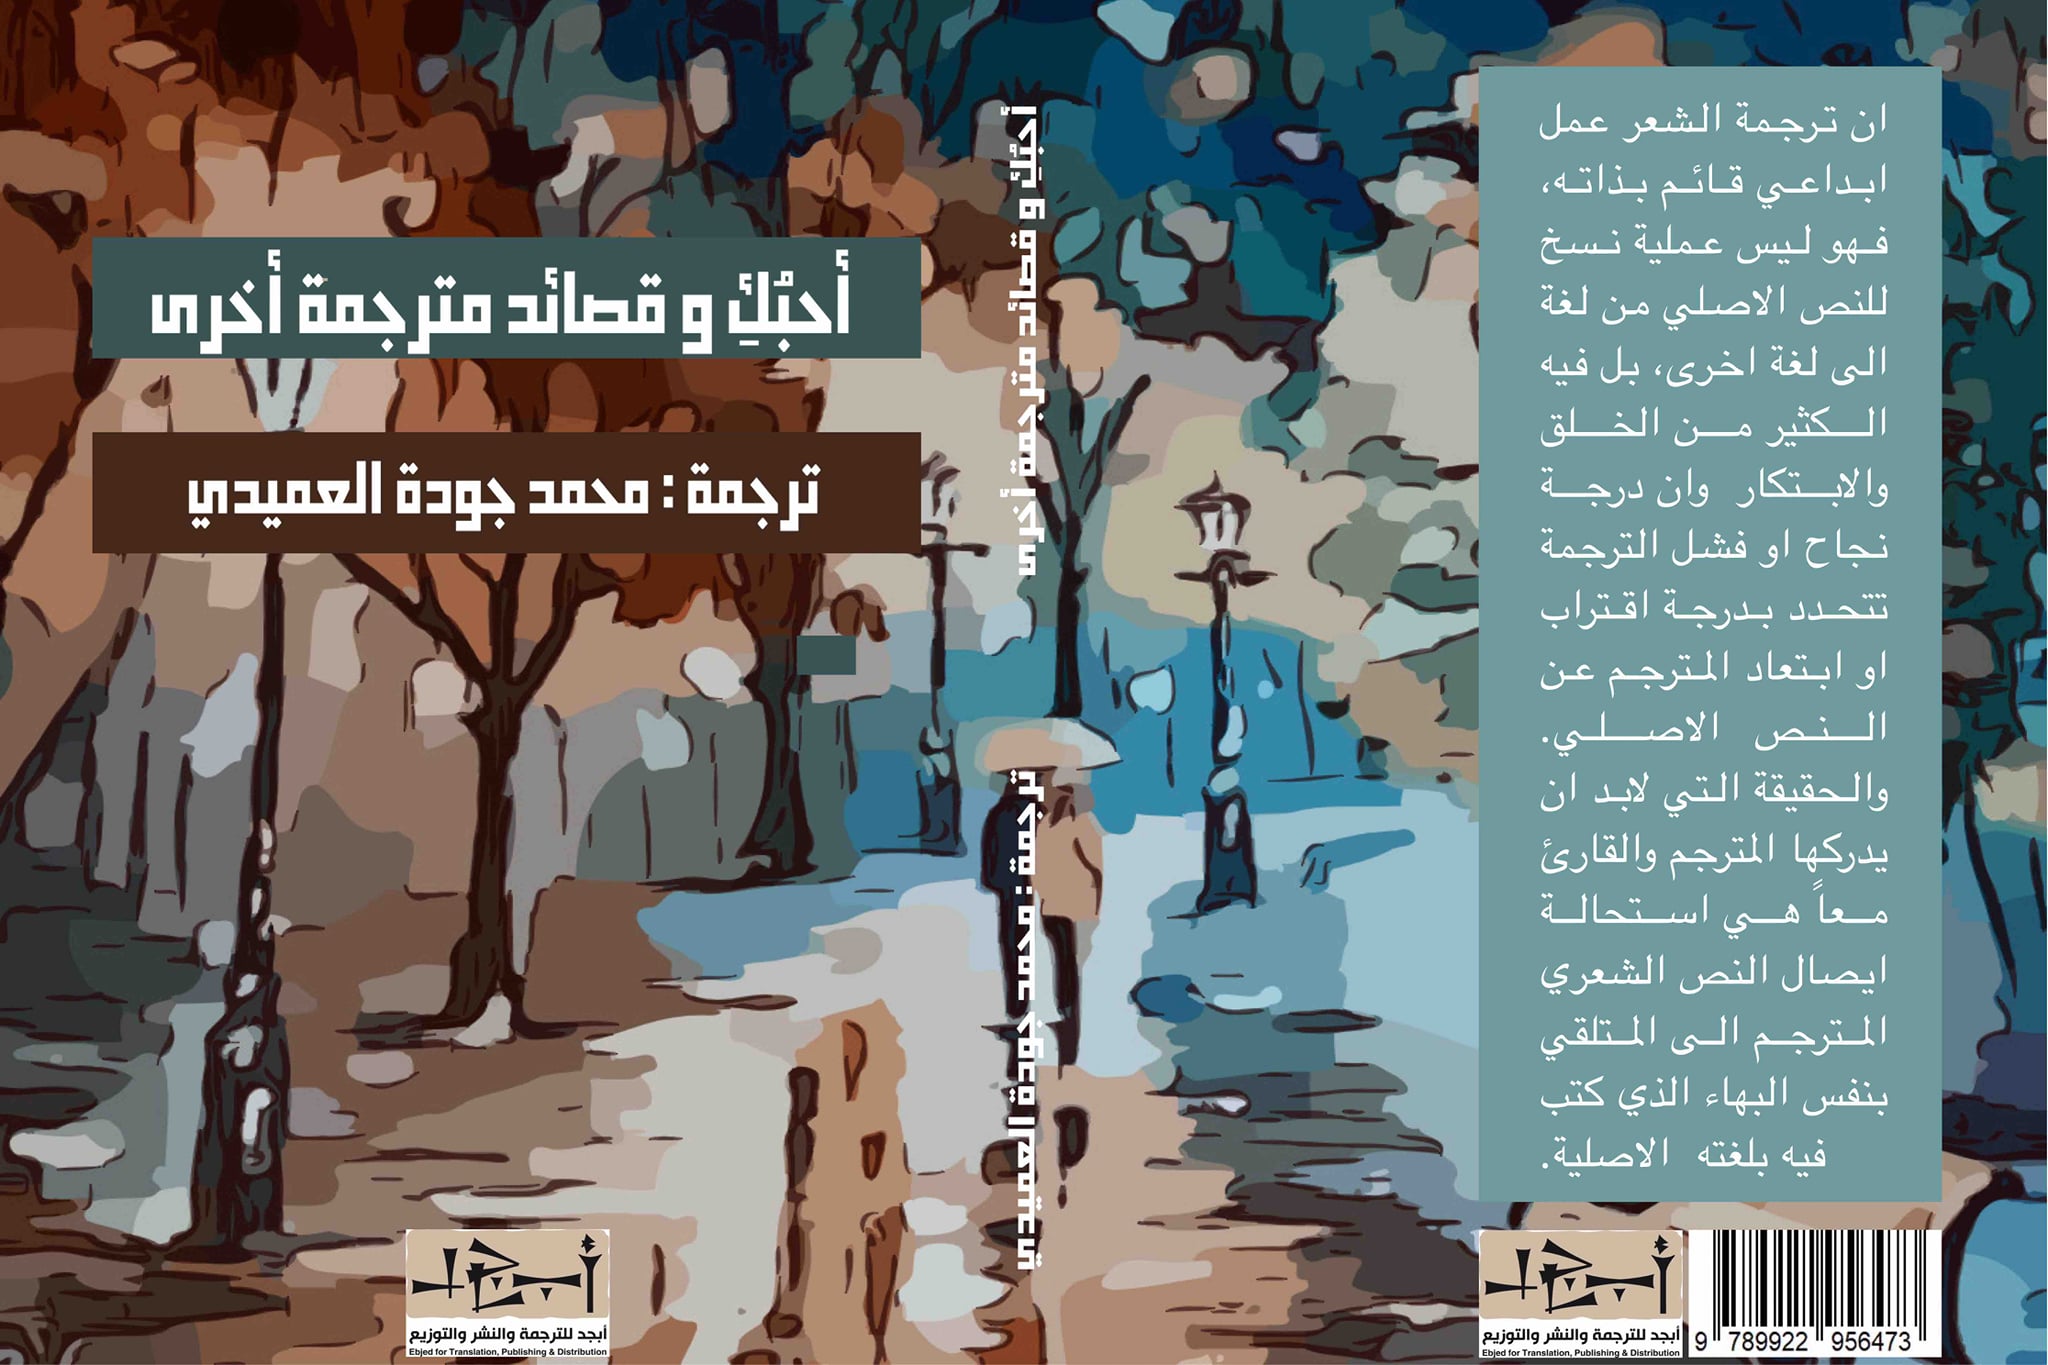  أحبك وقصائد مترجمة أخرى - نصوص مترجمة - محمد العميدي